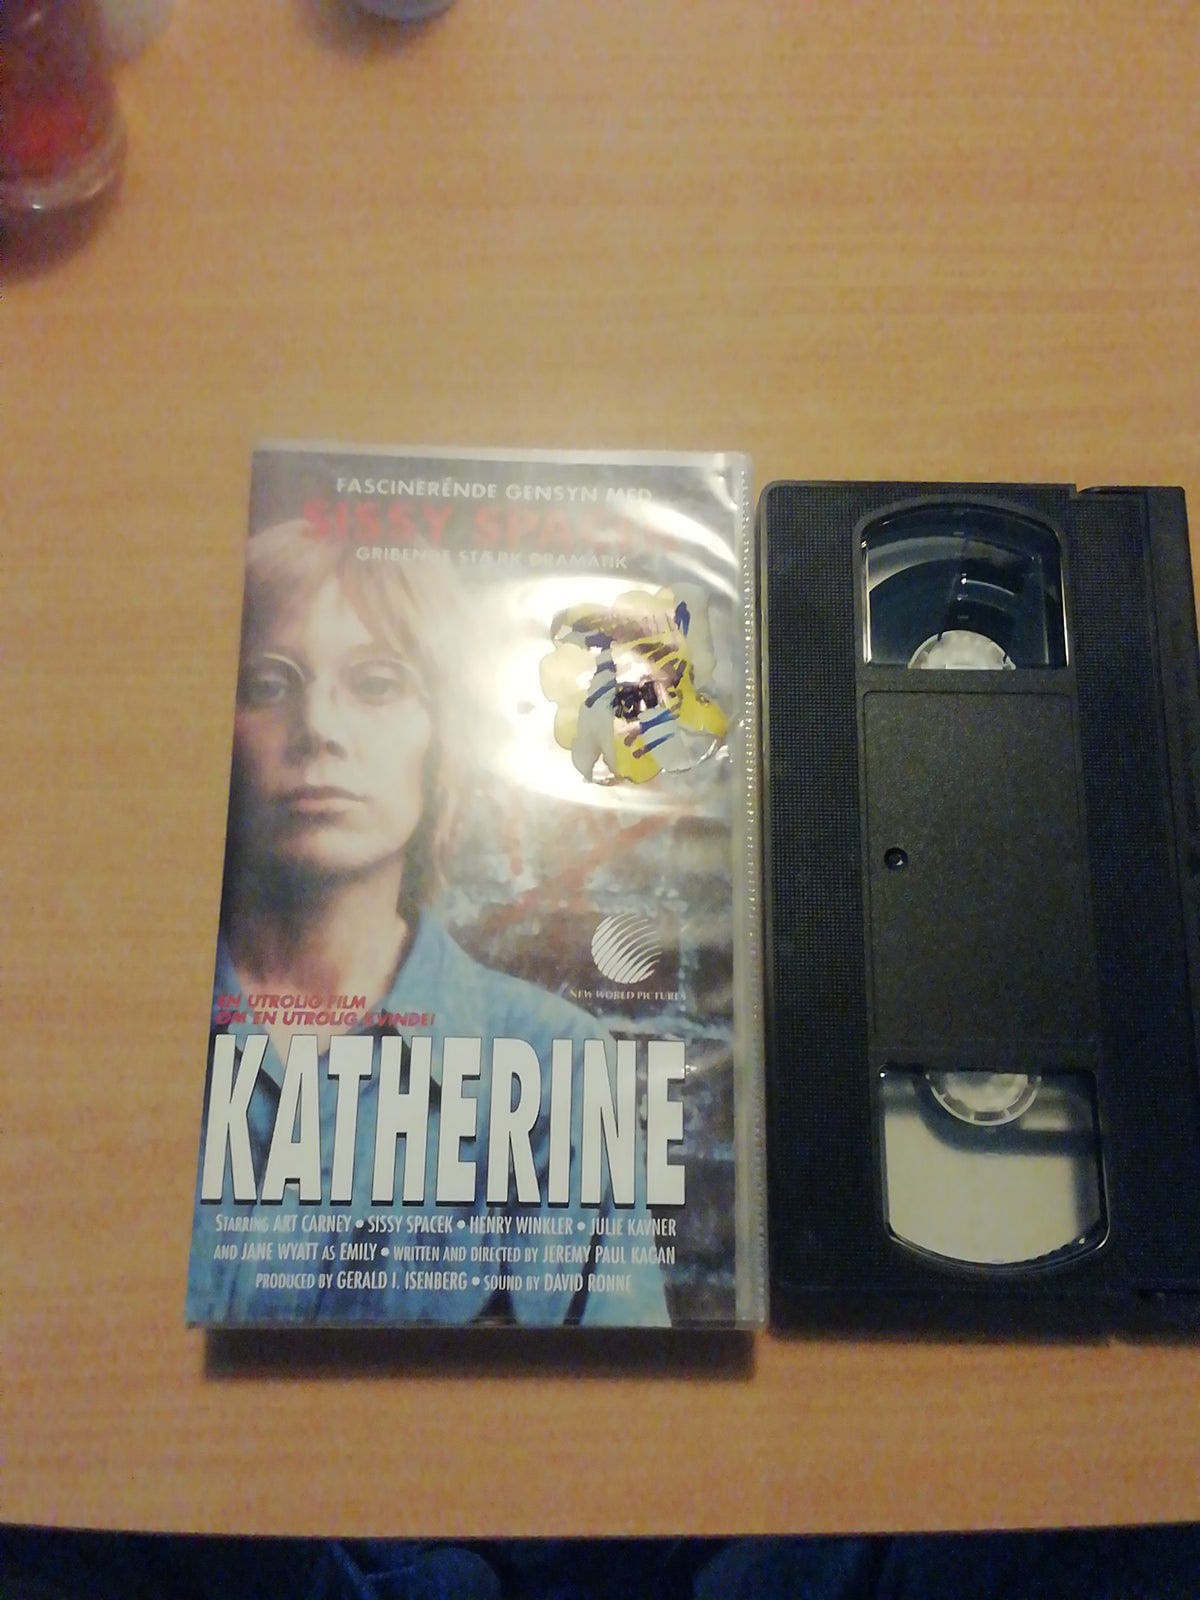 Anden genre, Katherine